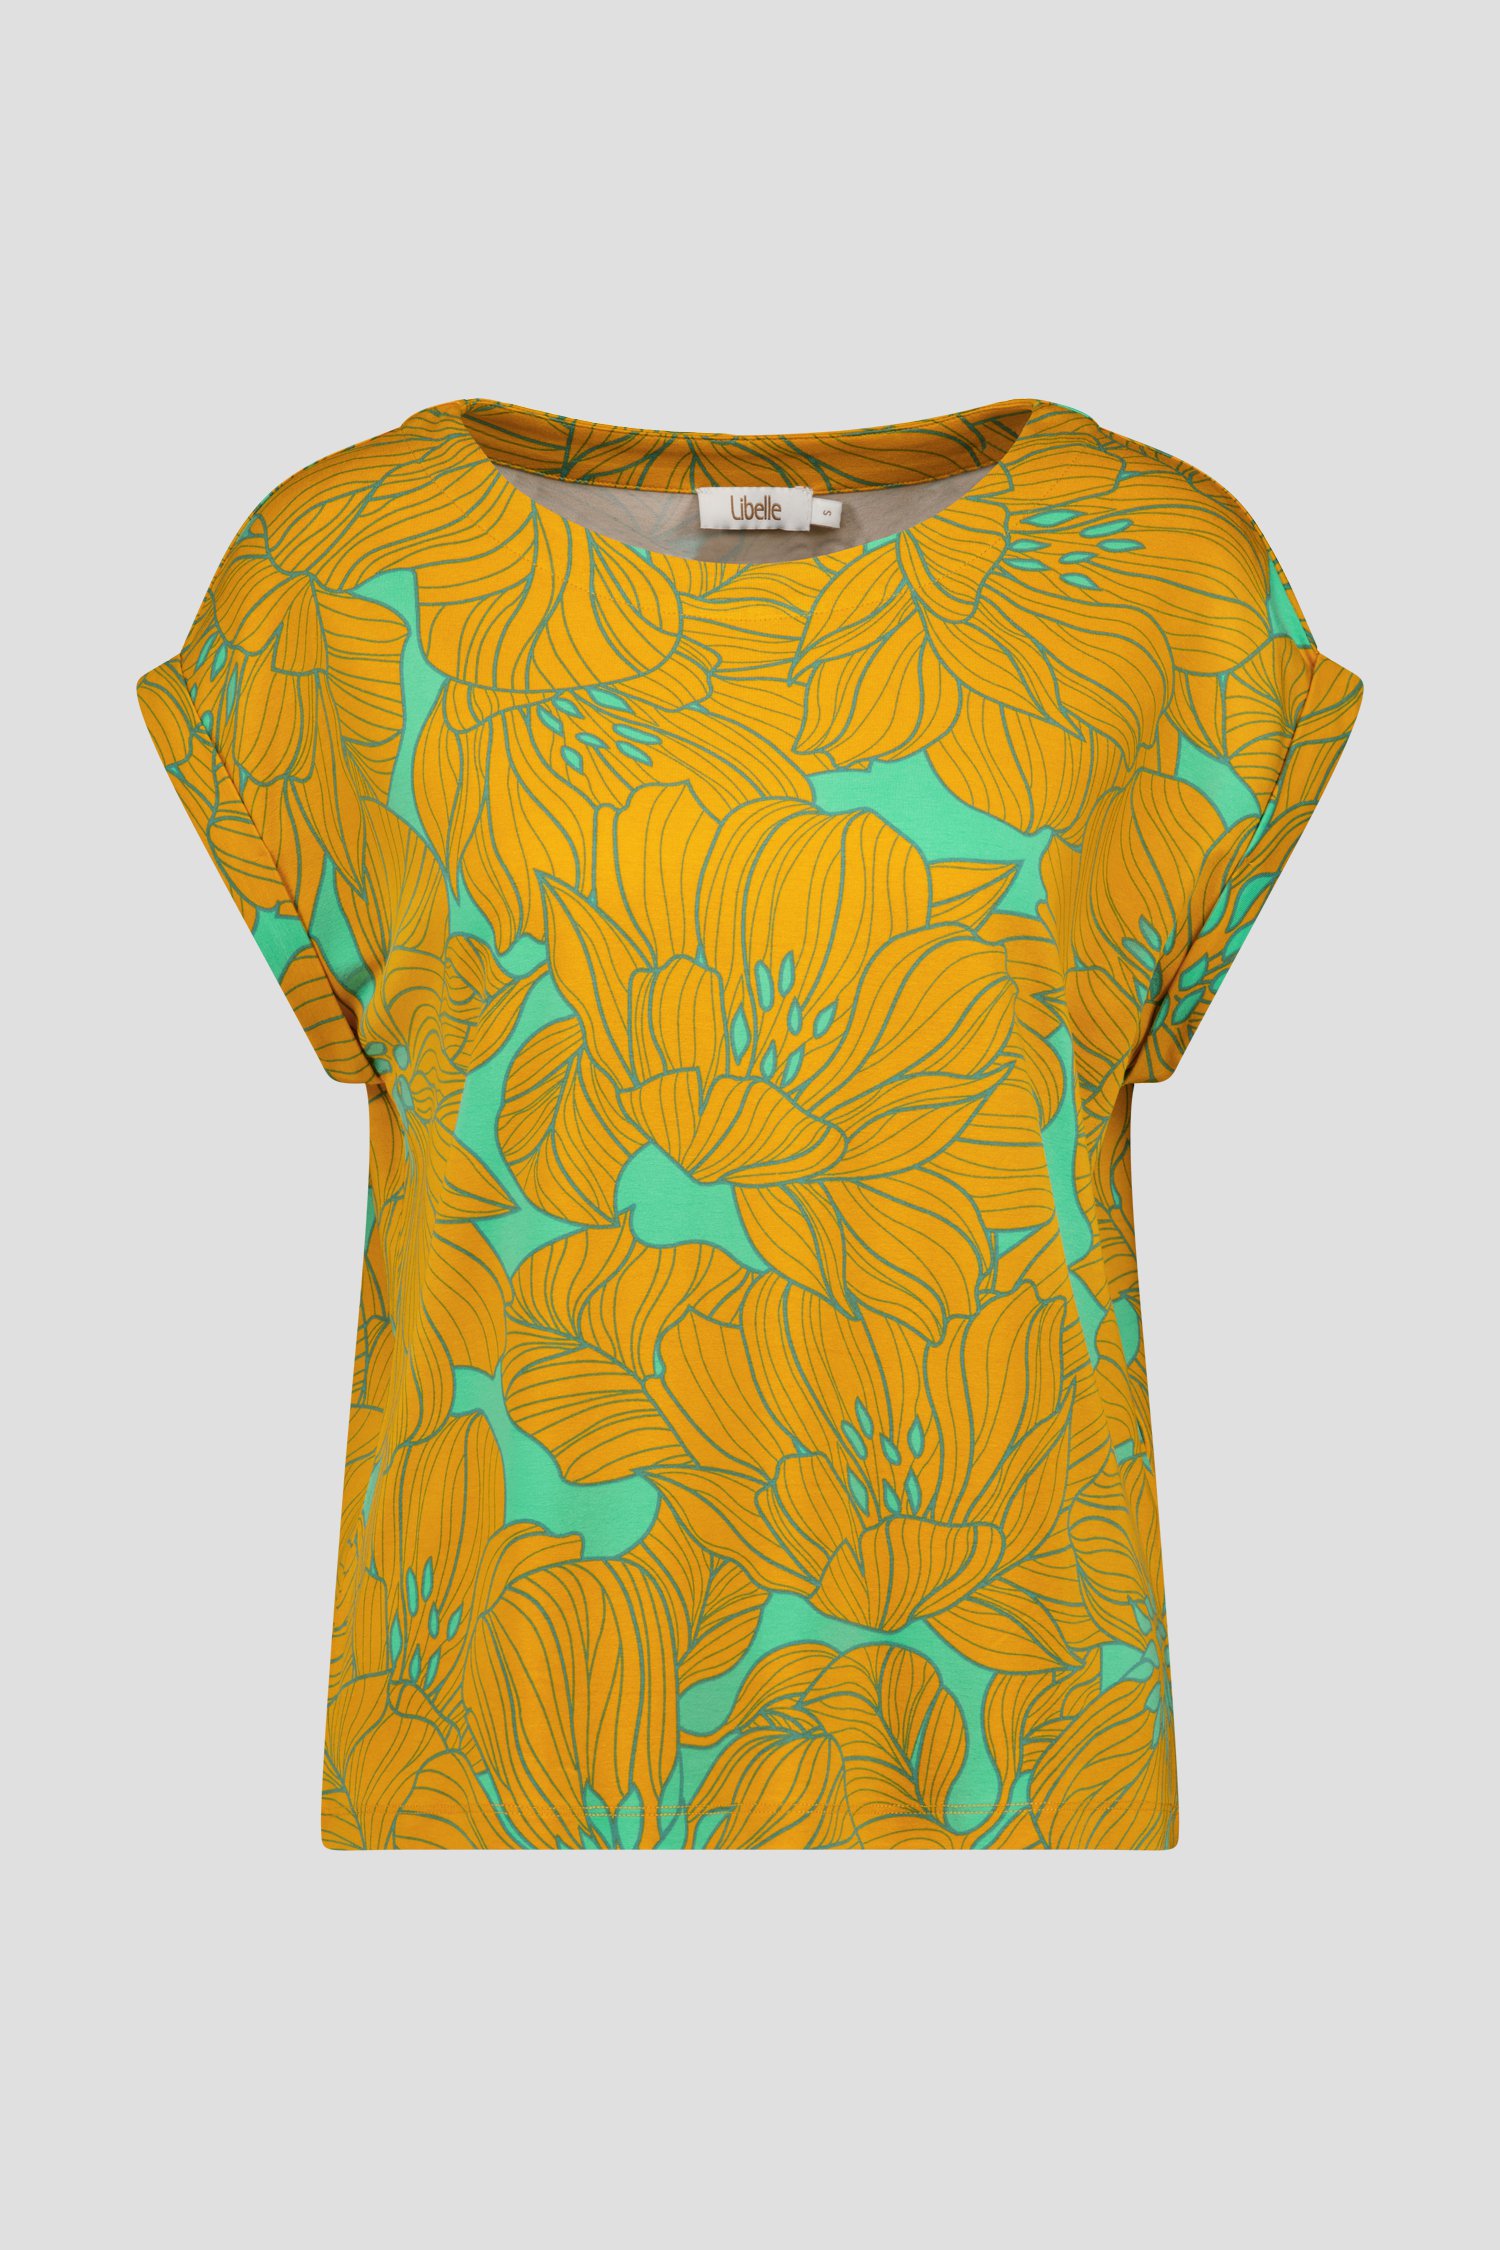 Groen T-shirt met oranje bloemenprint van Libelle voor Dames